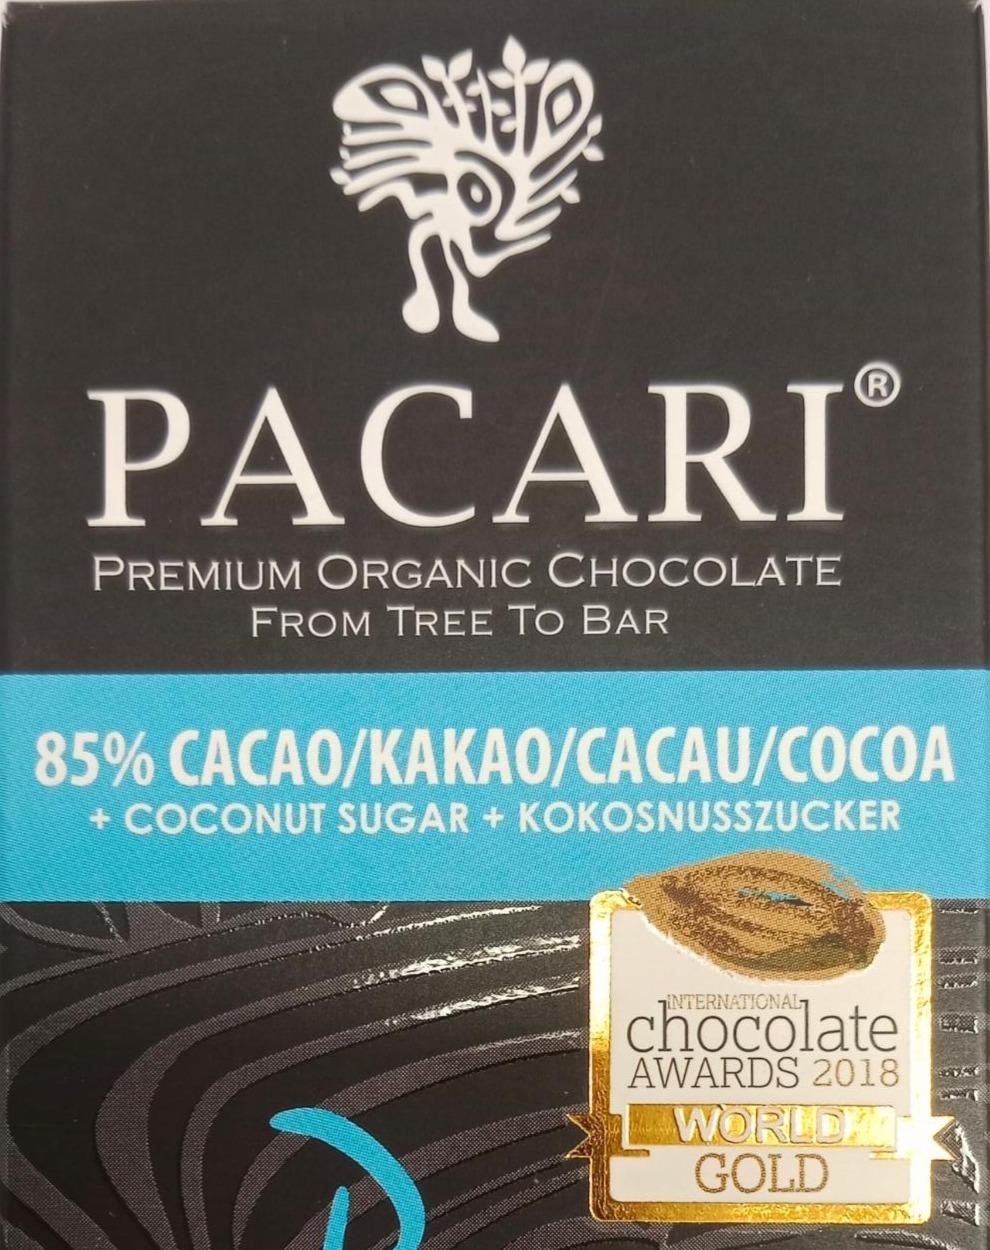 Fotografie - Premioum organic chocolate 85% cacao Pacari